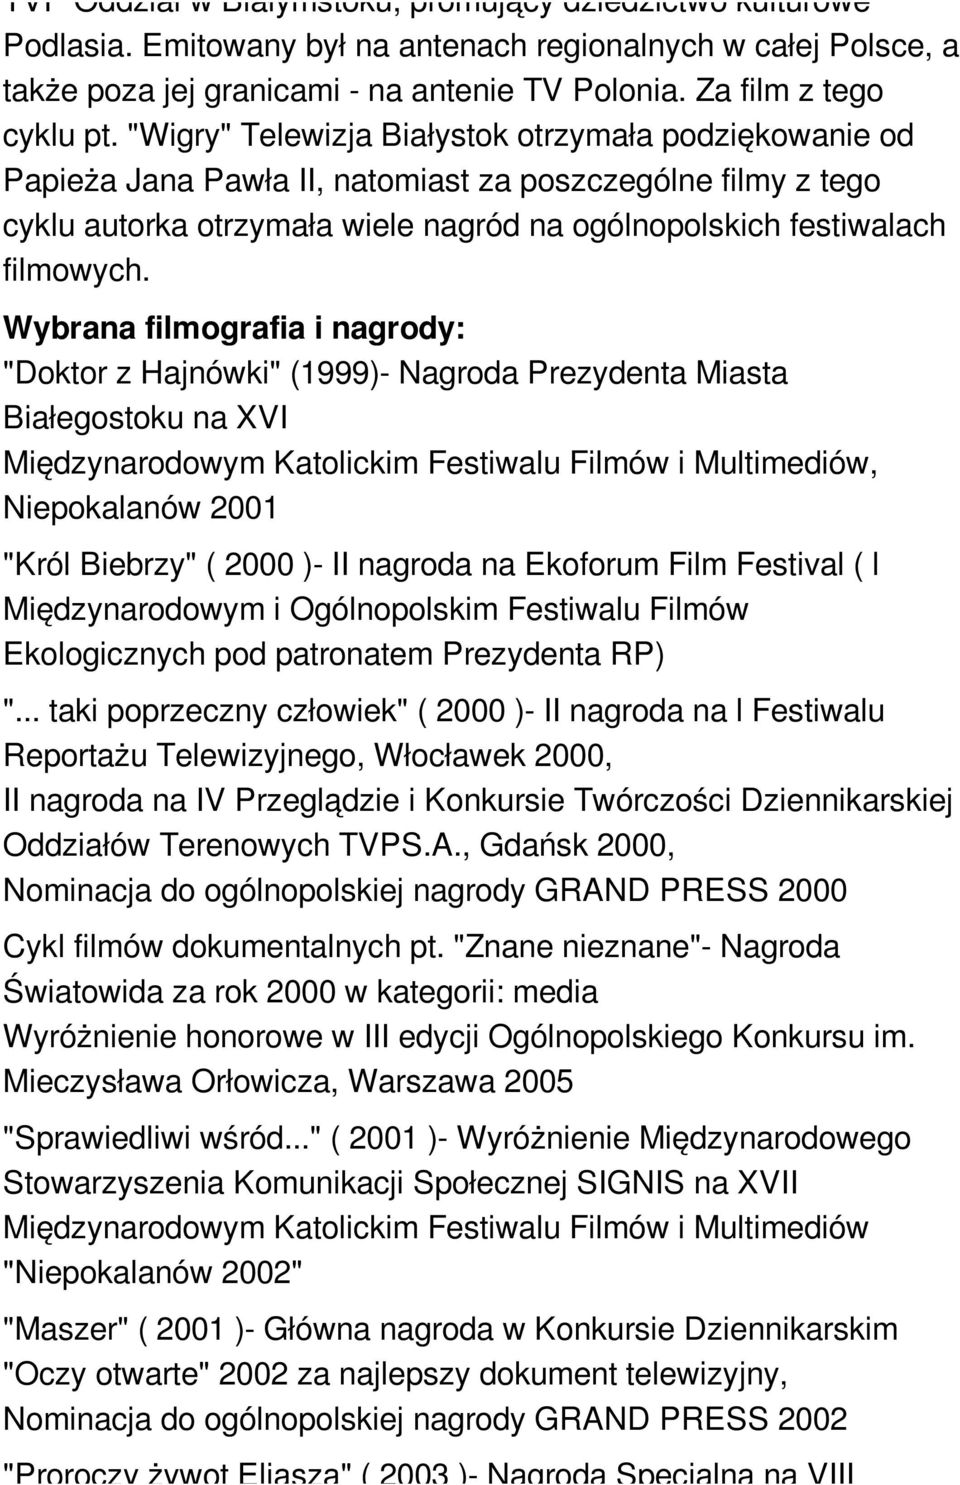 Wybrana filmografia i nagrody: "Doktor z Hajnówki" (1999)- Nagroda Prezydenta Miasta Białegostoku na XVI Międzynarodowym Katolickim Festiwalu Filmów i Multimediów, Niepokalanów 2001 "Król Biebrzy" (